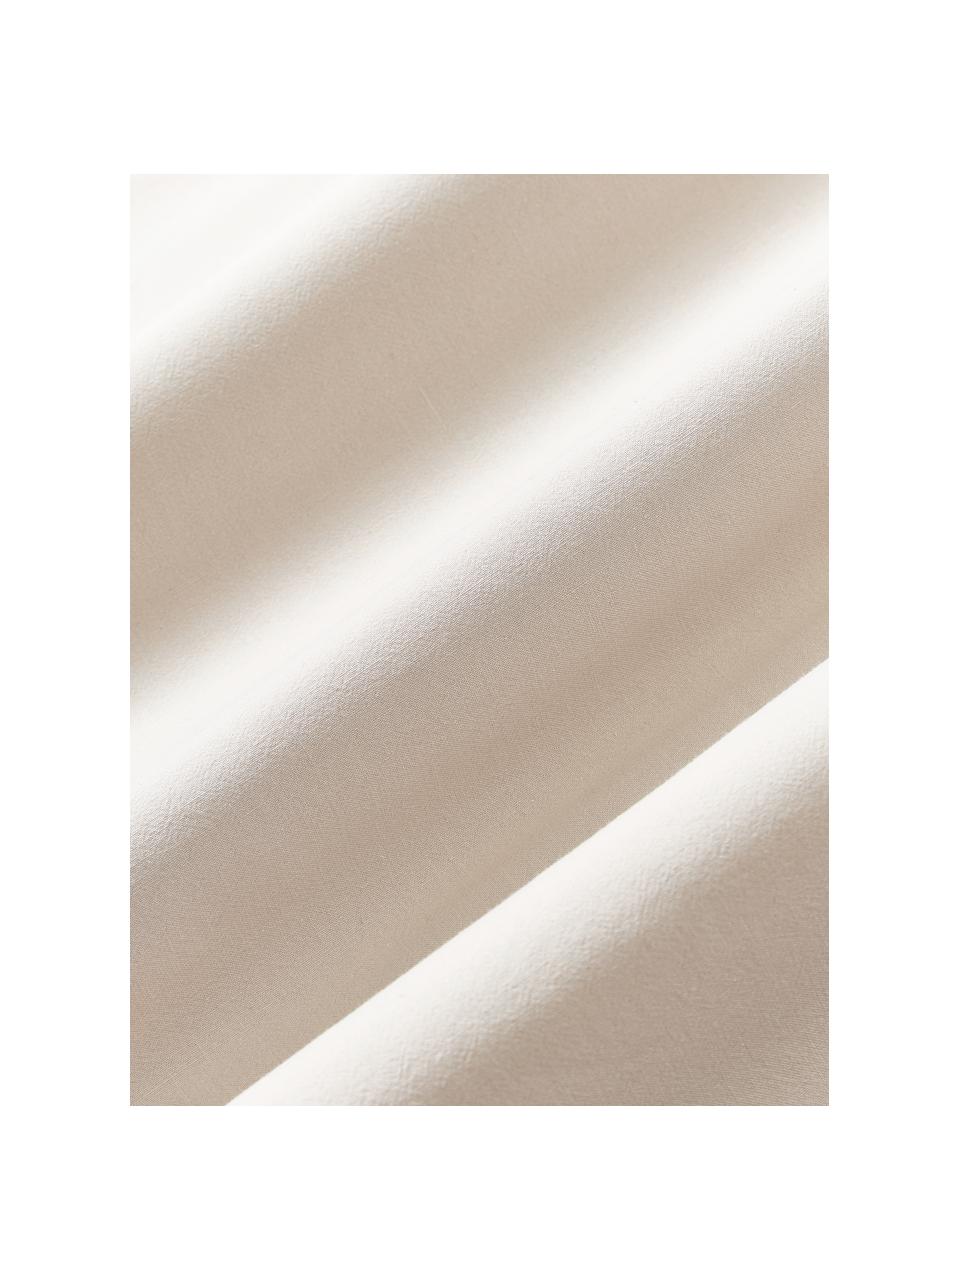 Bavlnená obliečka na vankúš Darlyn, 100 %  bavlna
Hustota vlákna 150 TC, štandard kvalita

Posteľná bielizeň z bavlny je príjemná na dotyk, dobre absorbuje vlhkosť a je vhodná pre alergikov

Látka bola podrobená špeciálnemu procesu „Softwash”, ktorý zabezpečuje nepravidelný vypraný vzhľad, je mäkká, pružná a má prirodzený krčivý vzhľad, ktorý nevyžaduje žehlenie a pôsobí útulne

Materiál použitý v tomto produkte bol testovaný na škodlivé látky a certifikovaný podľa STANDARD 100 od OEKO-TEX®, 4265CIT, CITEVE., Svetlobéžová, Š 40 x D 80 cm